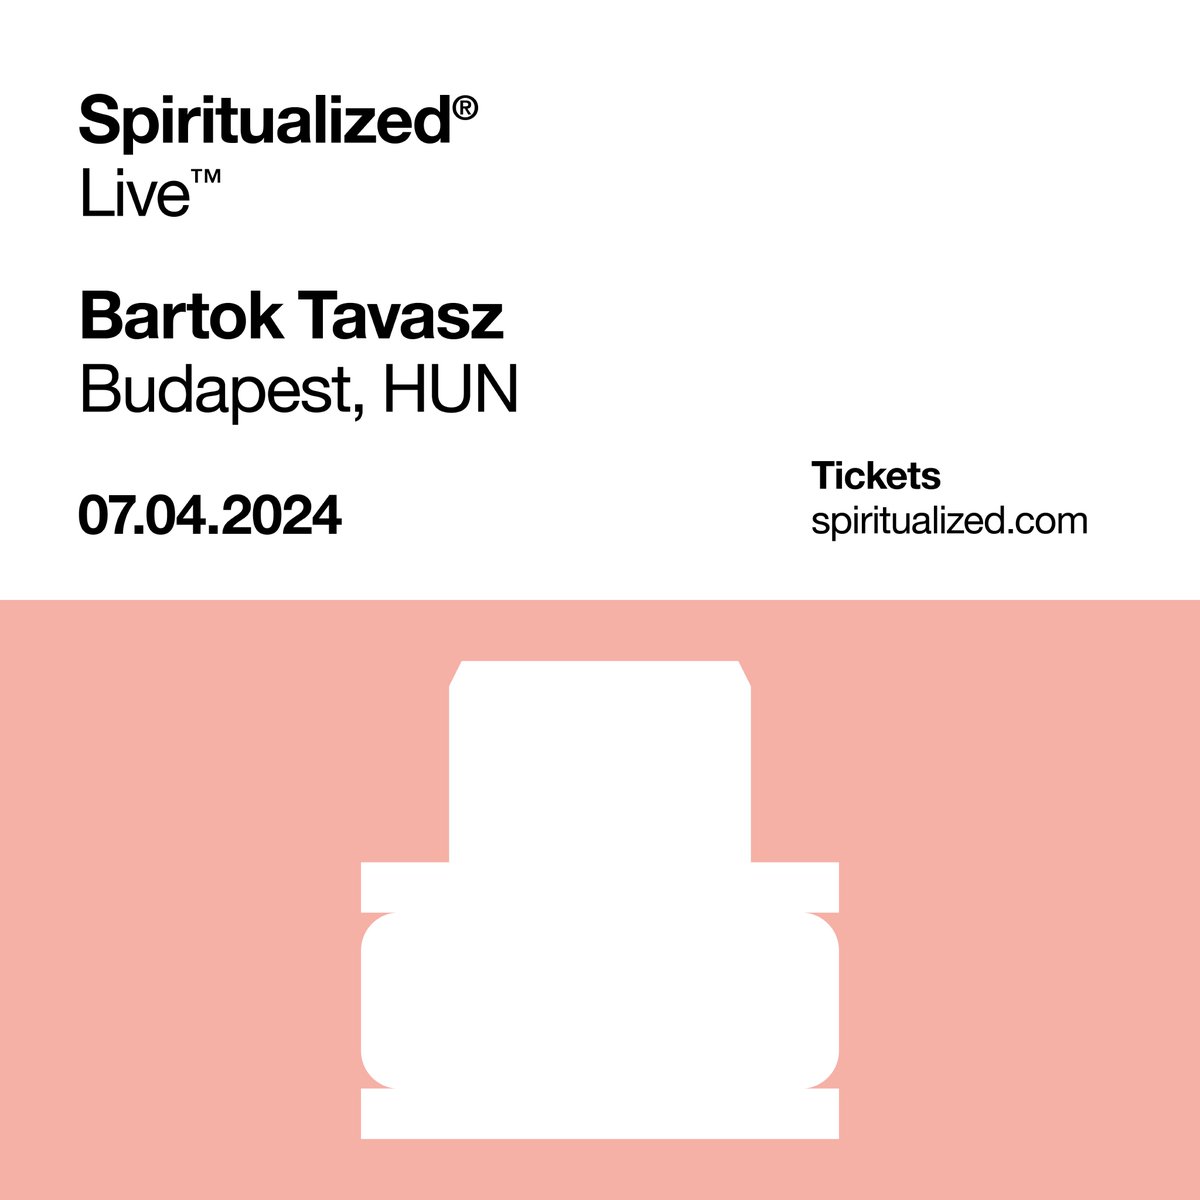 Spiritualized® Live™ Bartõk Spring Budapest, HUN 07.04.24 spiritualized.com